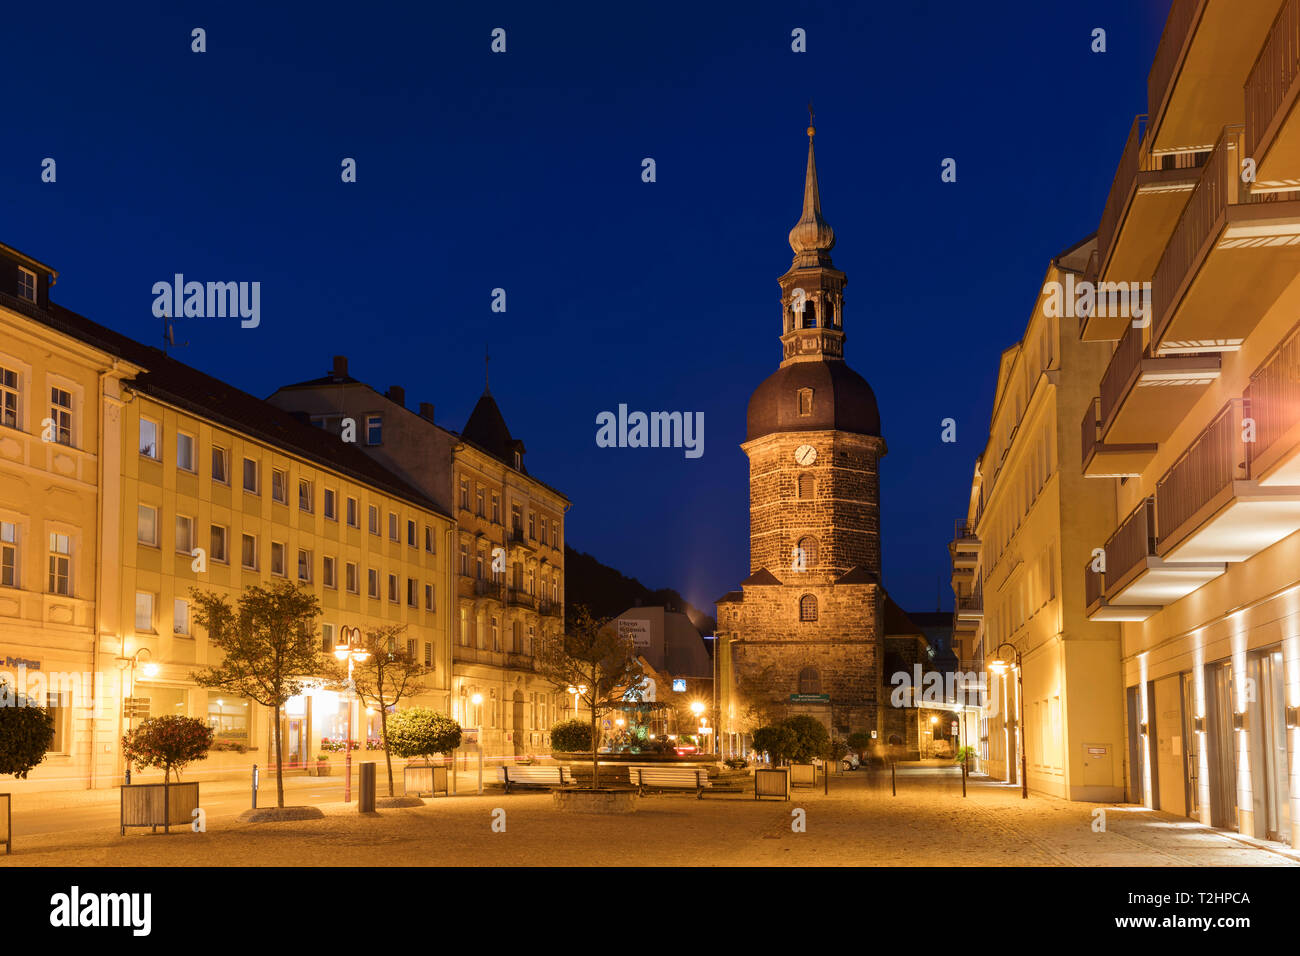 Kirchengemeinde St. Johannis de nuit à Bad Schandau, Allemagne, Europe Banque D'Images